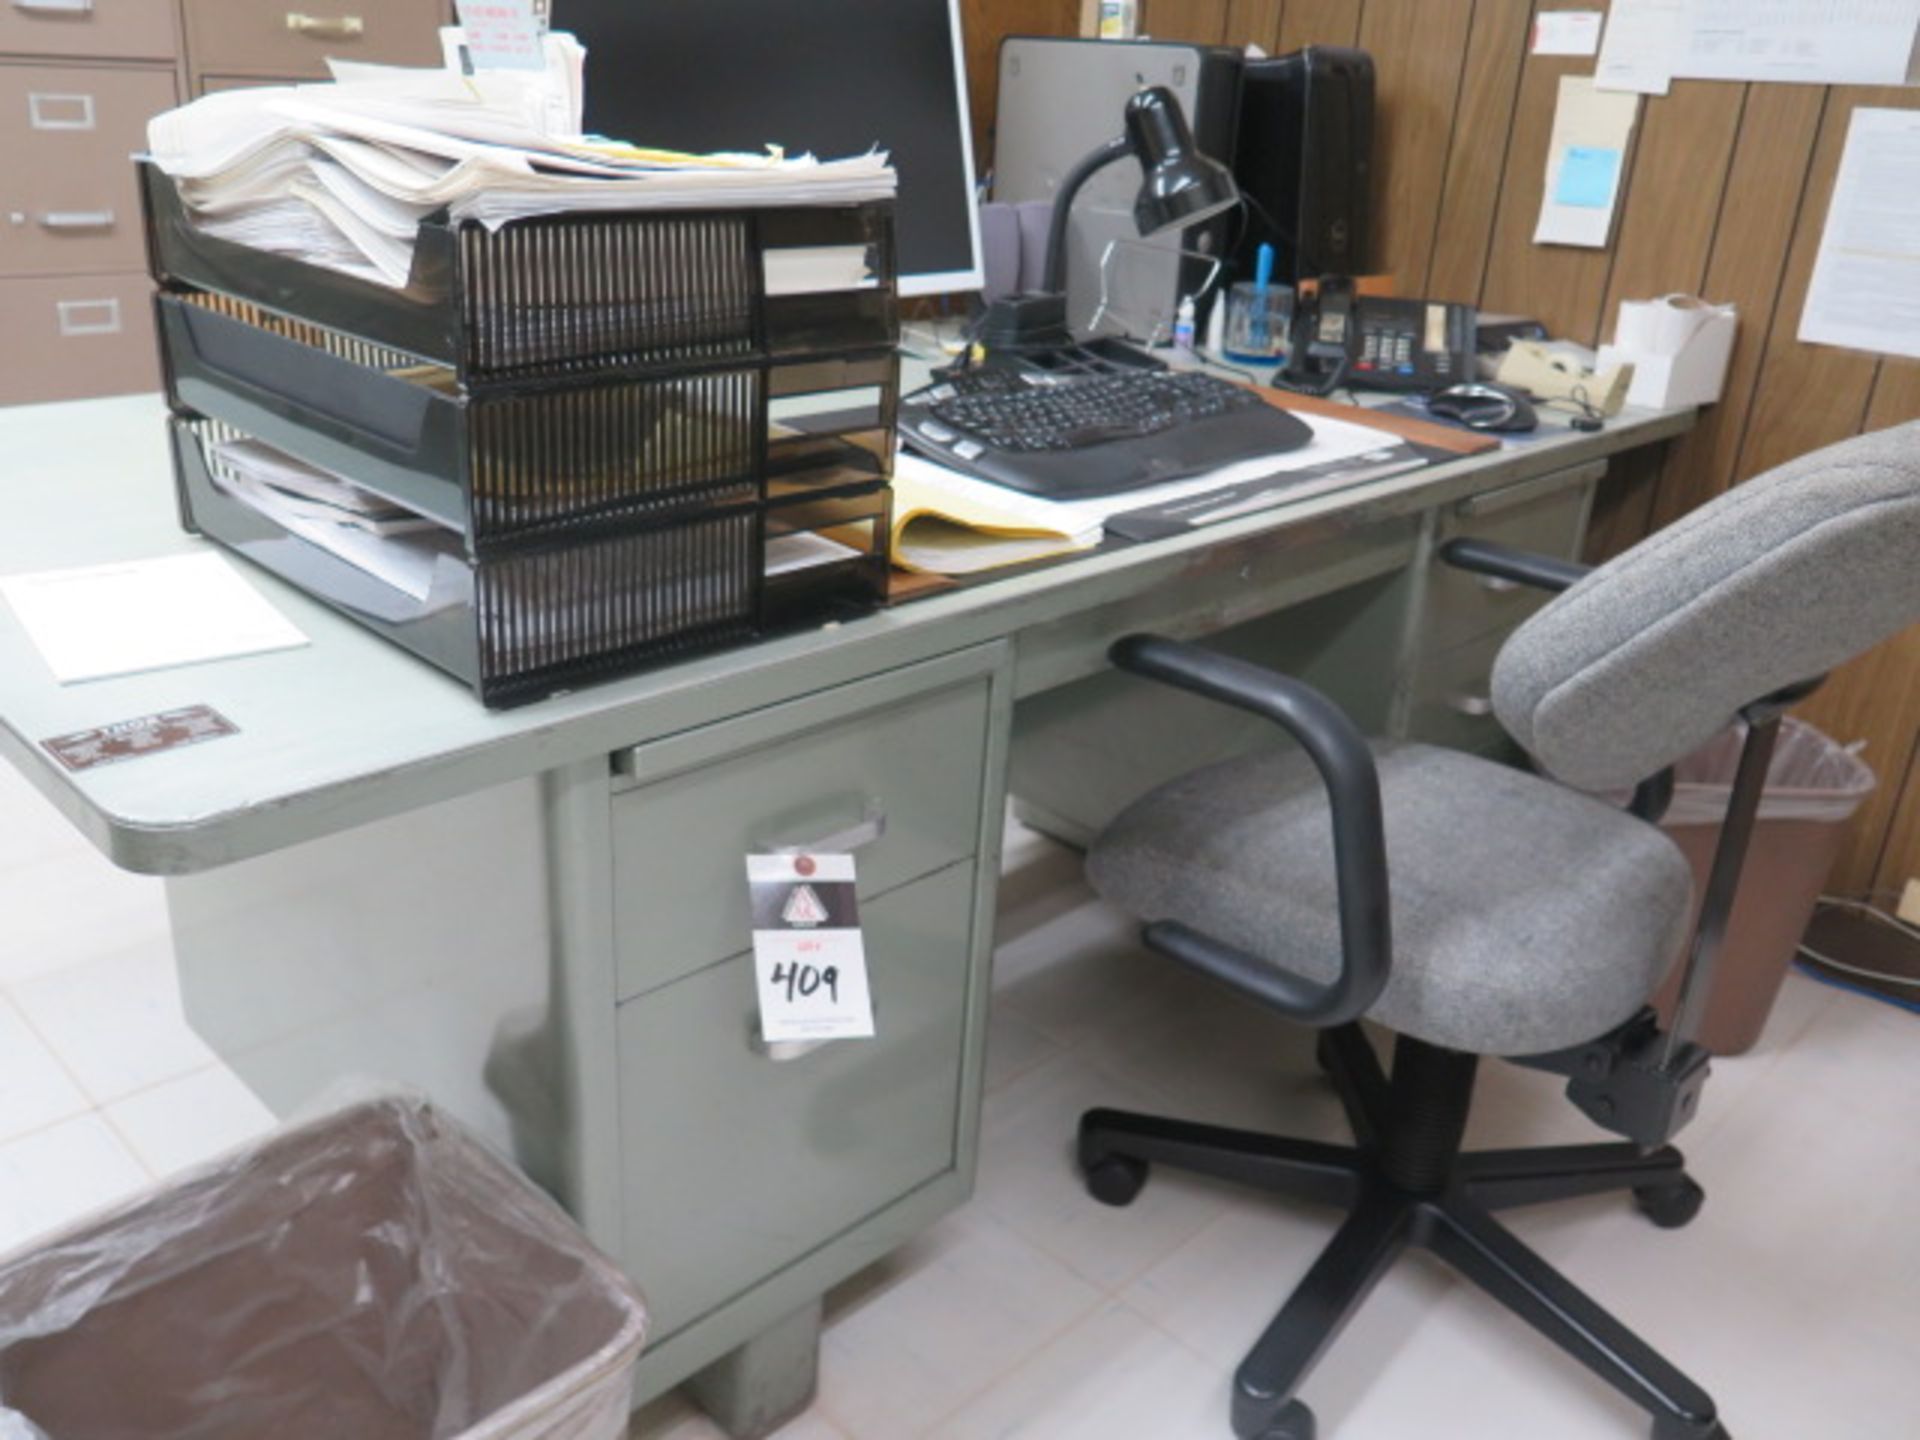 Desks (2) and Credenza (SOLD AS-IS - NO WARRANTY)